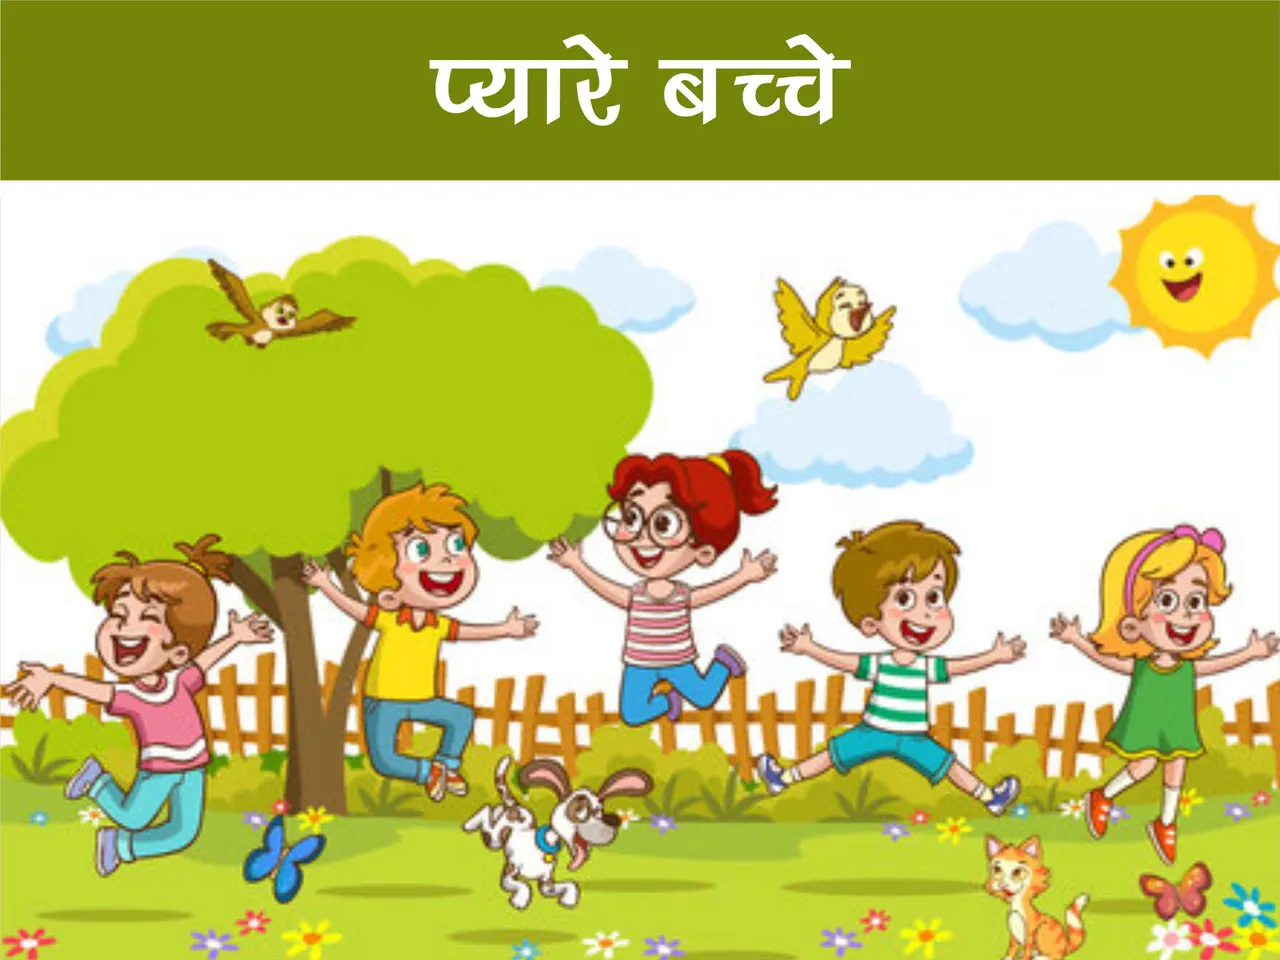 Kids playing in garden cartoon image